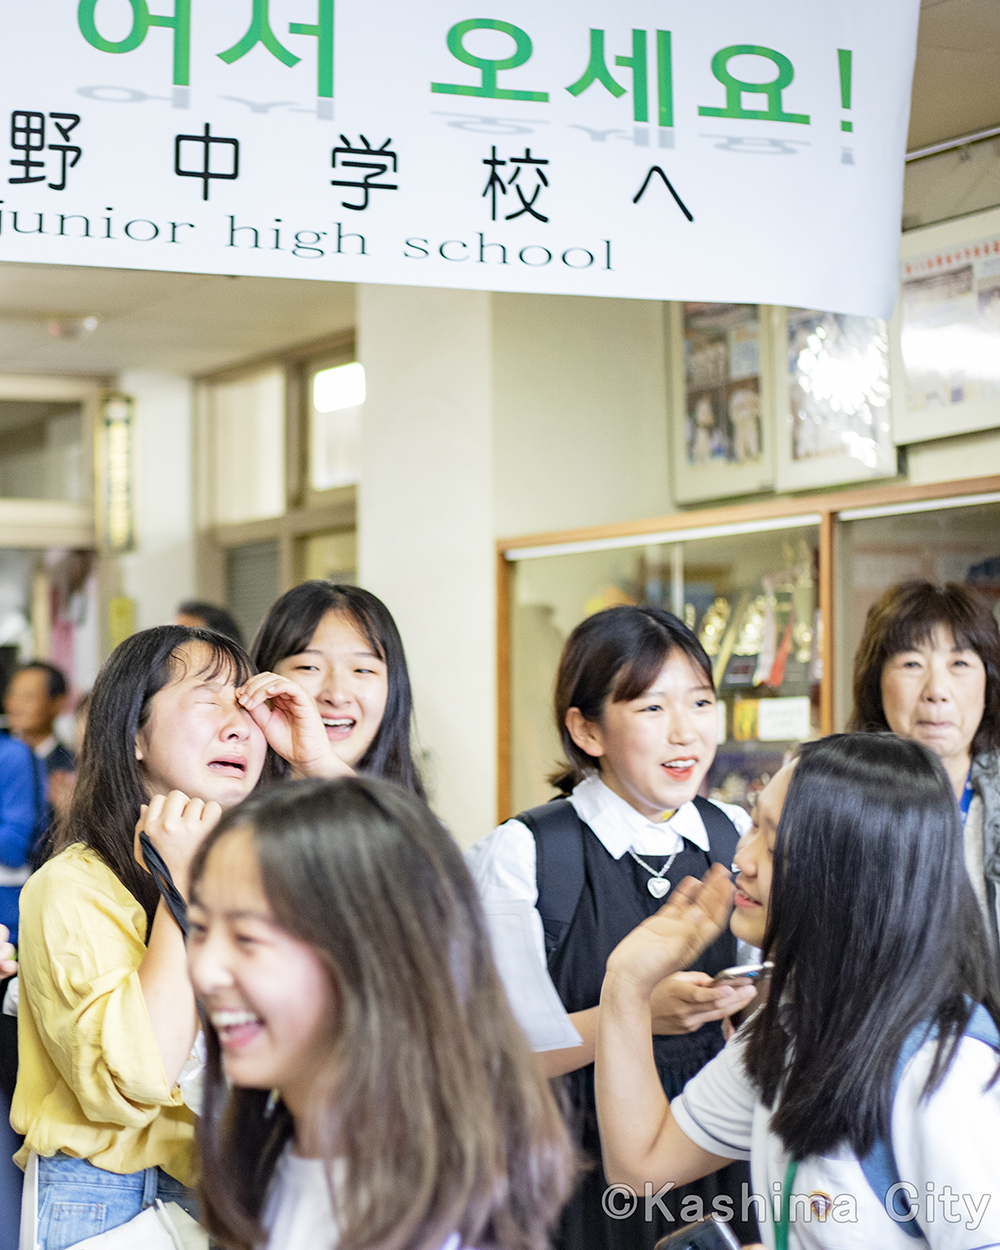 交流会終了後、大野中の生徒たちとの別れを惜しむ韓国西帰浦市の中学生